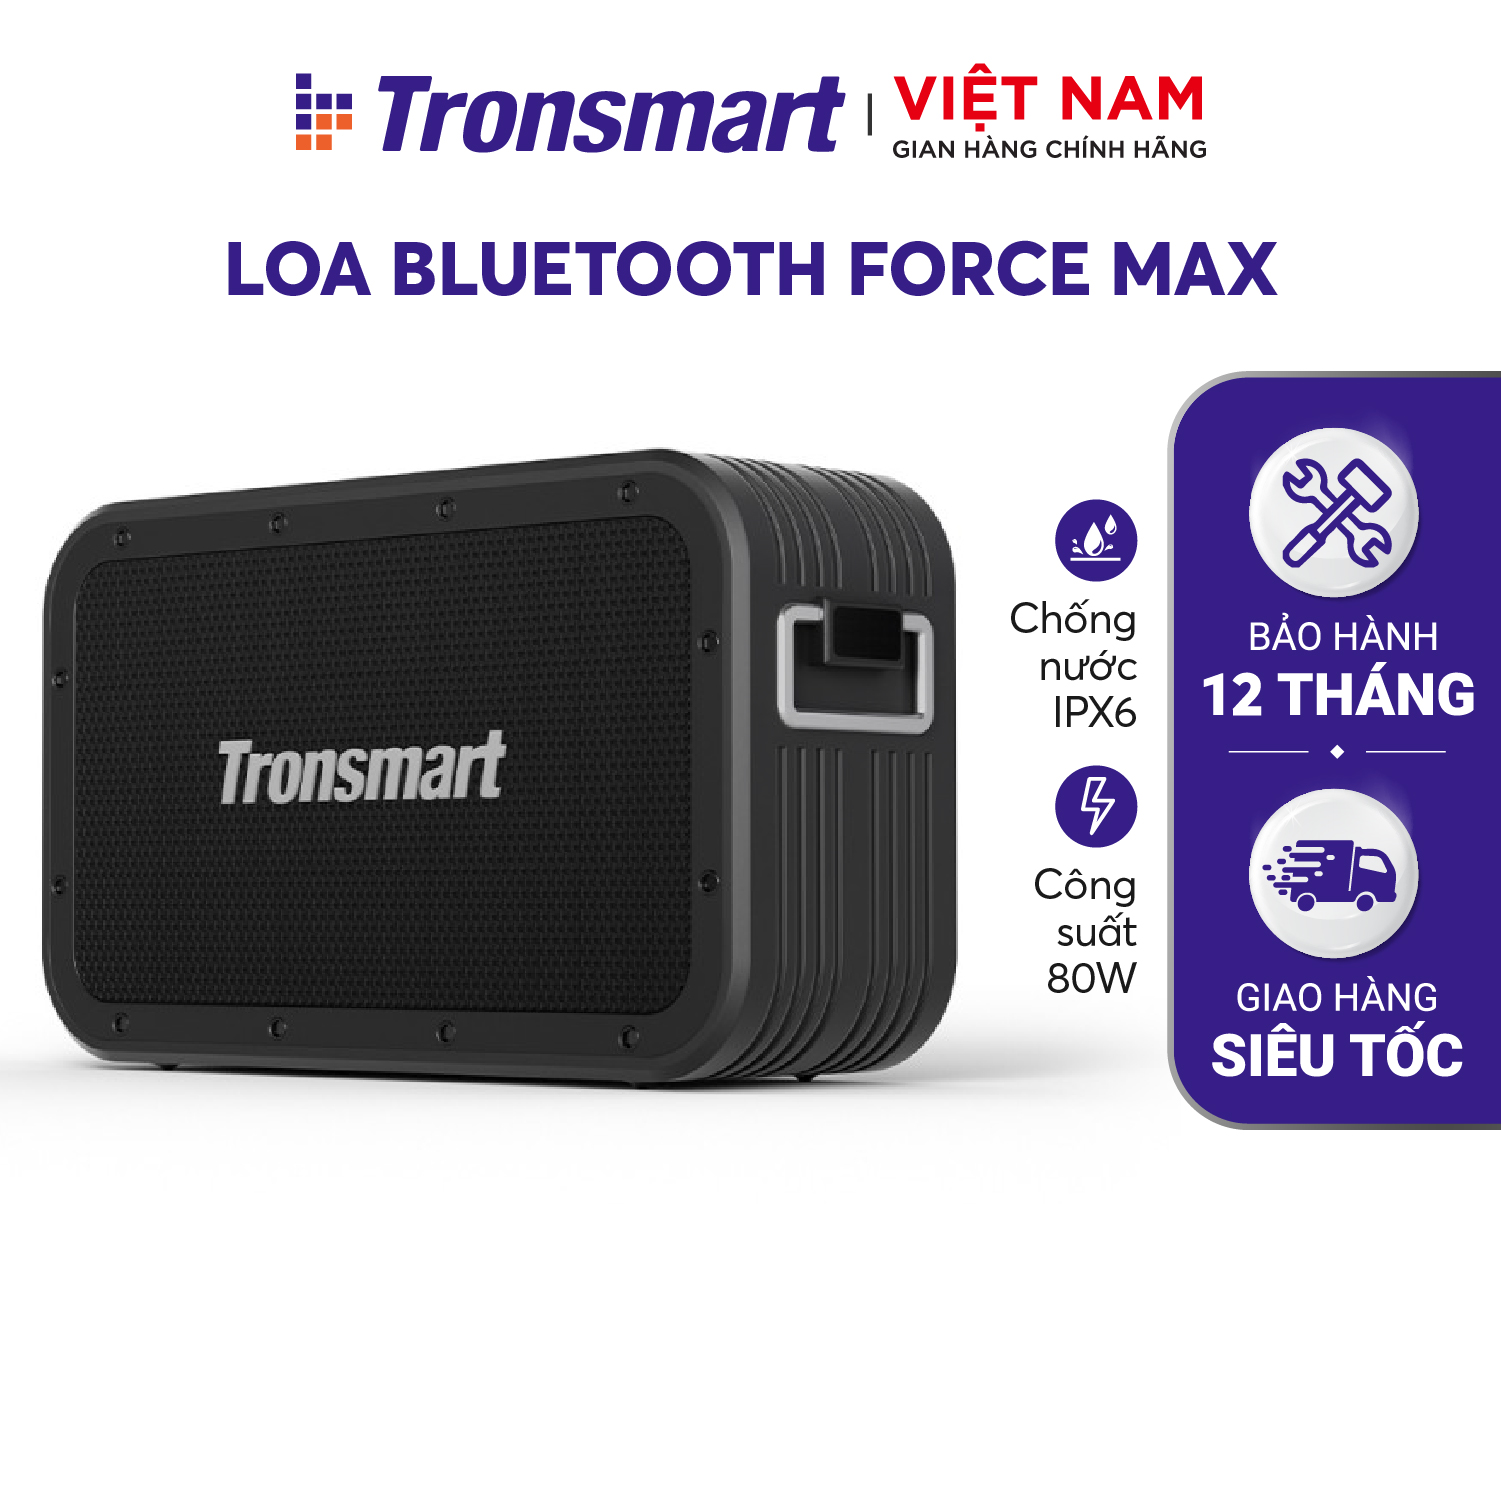 Loa Bluetooth 5.0 Tronsmart Force Max Công suất 80W, Chống thấm nước IPX6